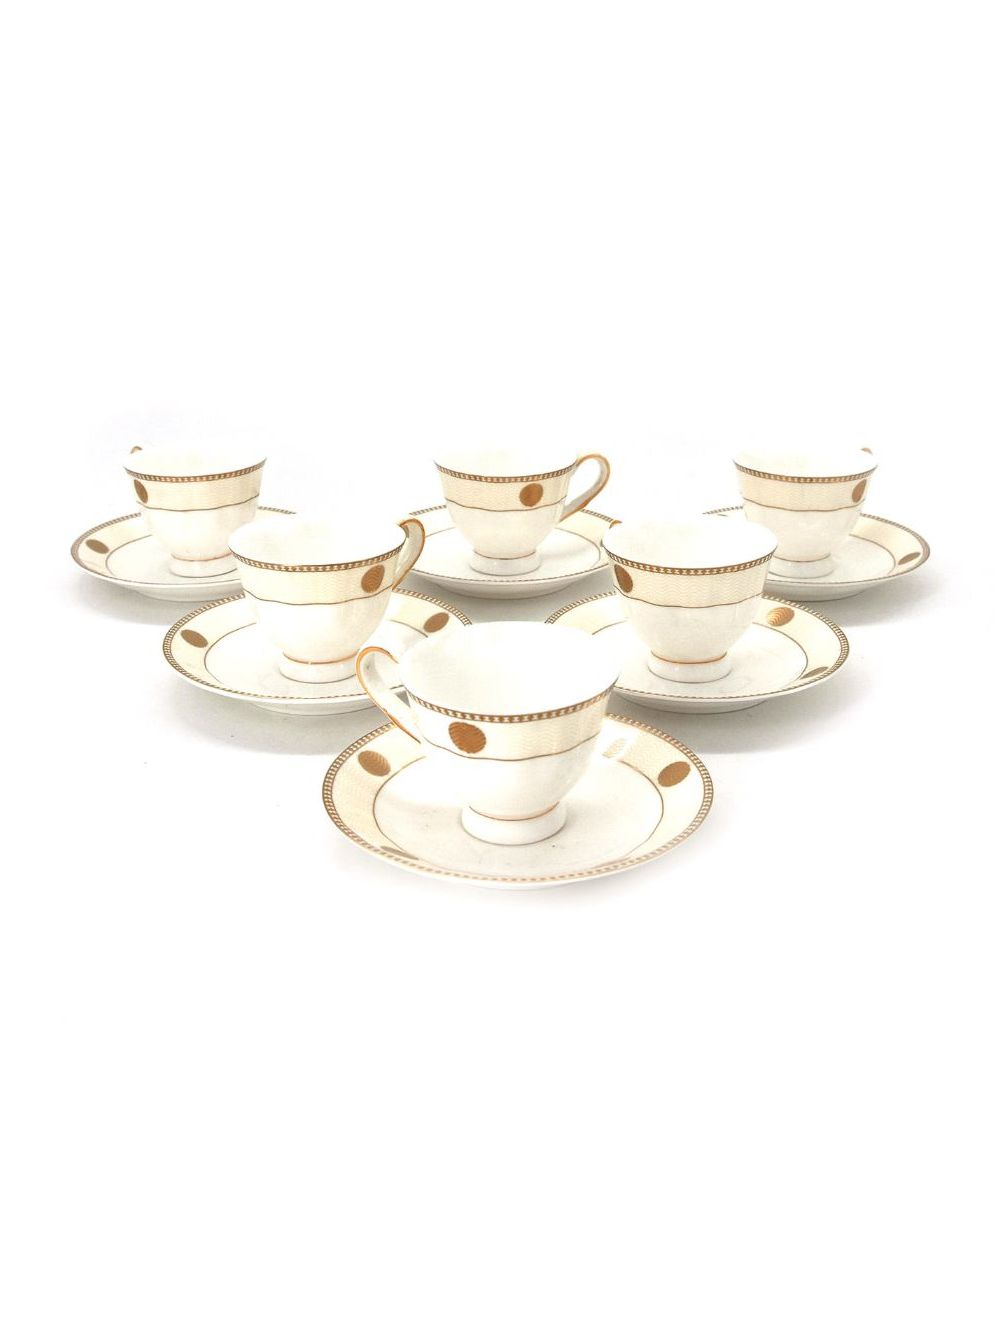 Tea Cup And Saucer 12 Pieces Set